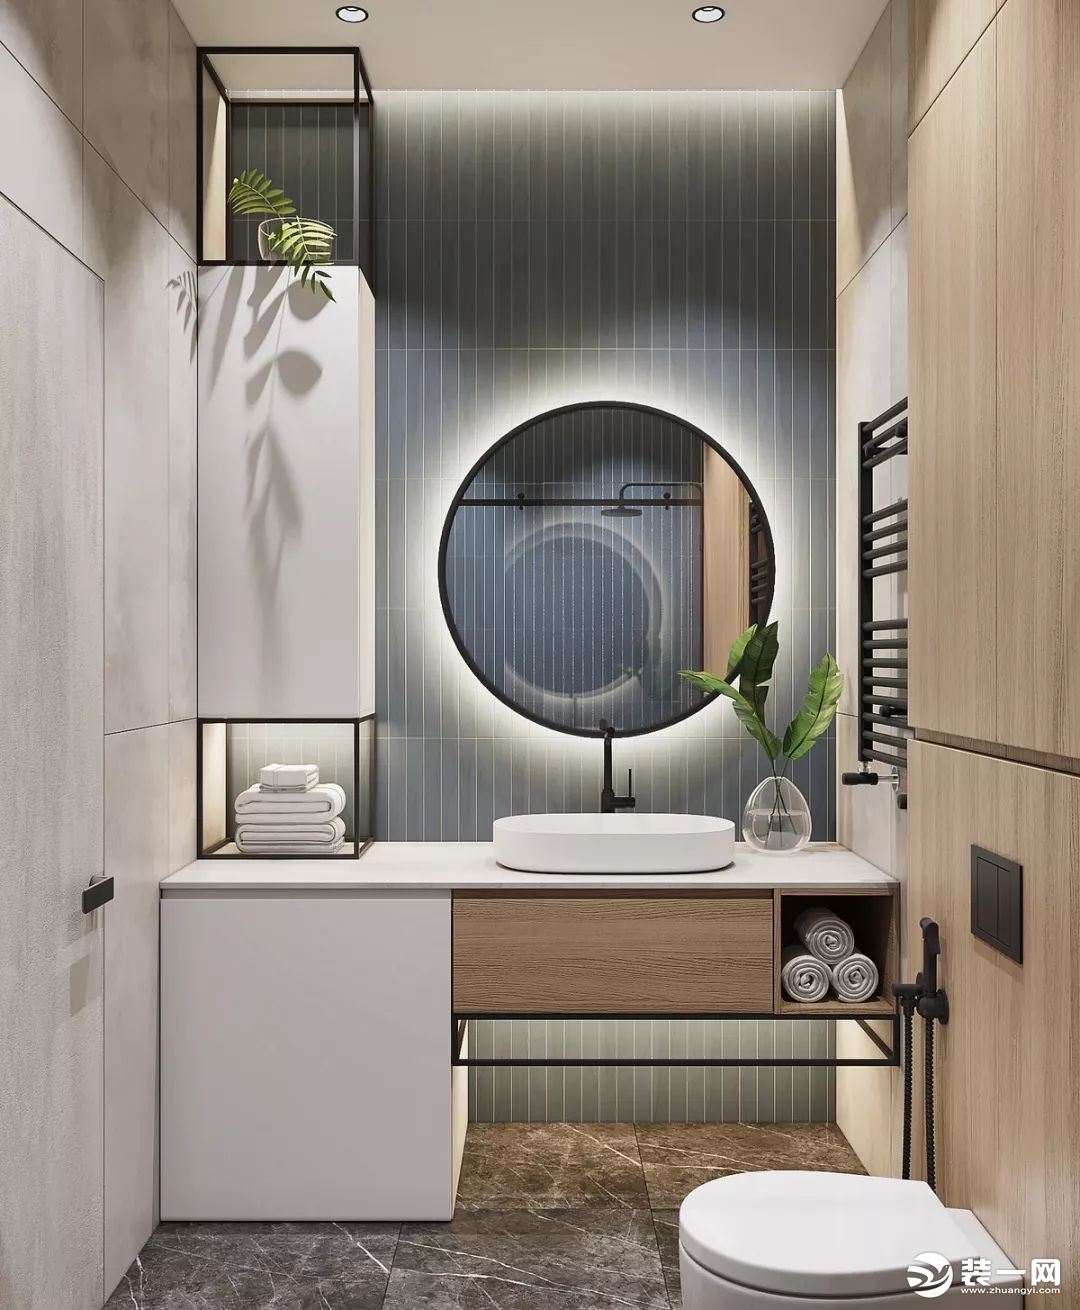 主卫的洗手台是放在了卫生间的门外，地面的创意地砖可以延伸空间视觉感。淋浴房内做上壁龛来辅助收纳，使用